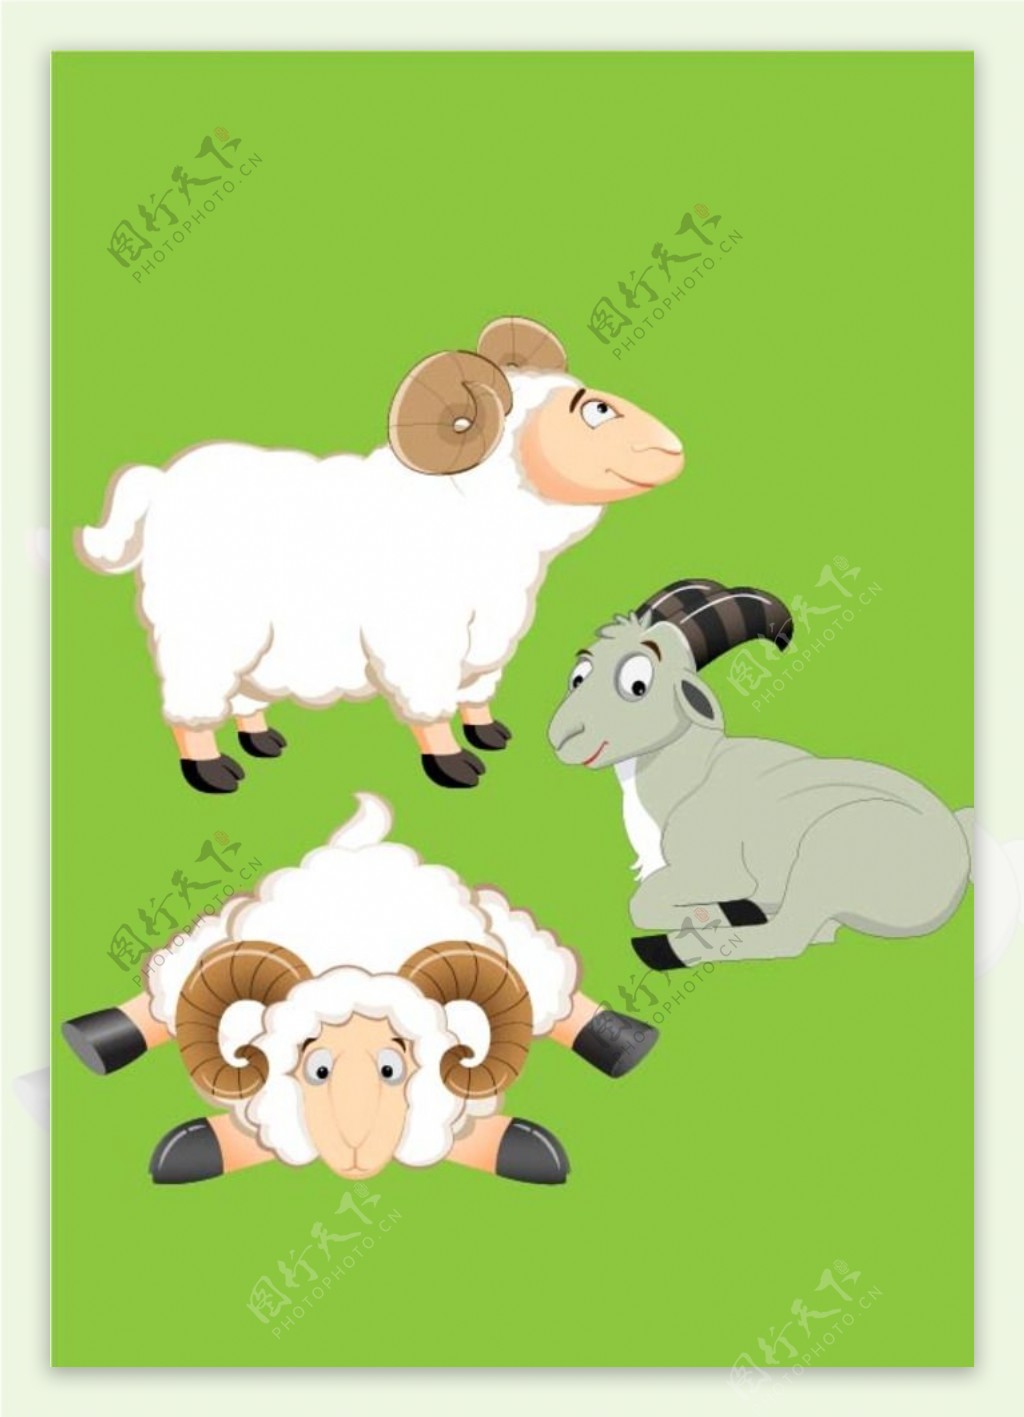 羊羊族群